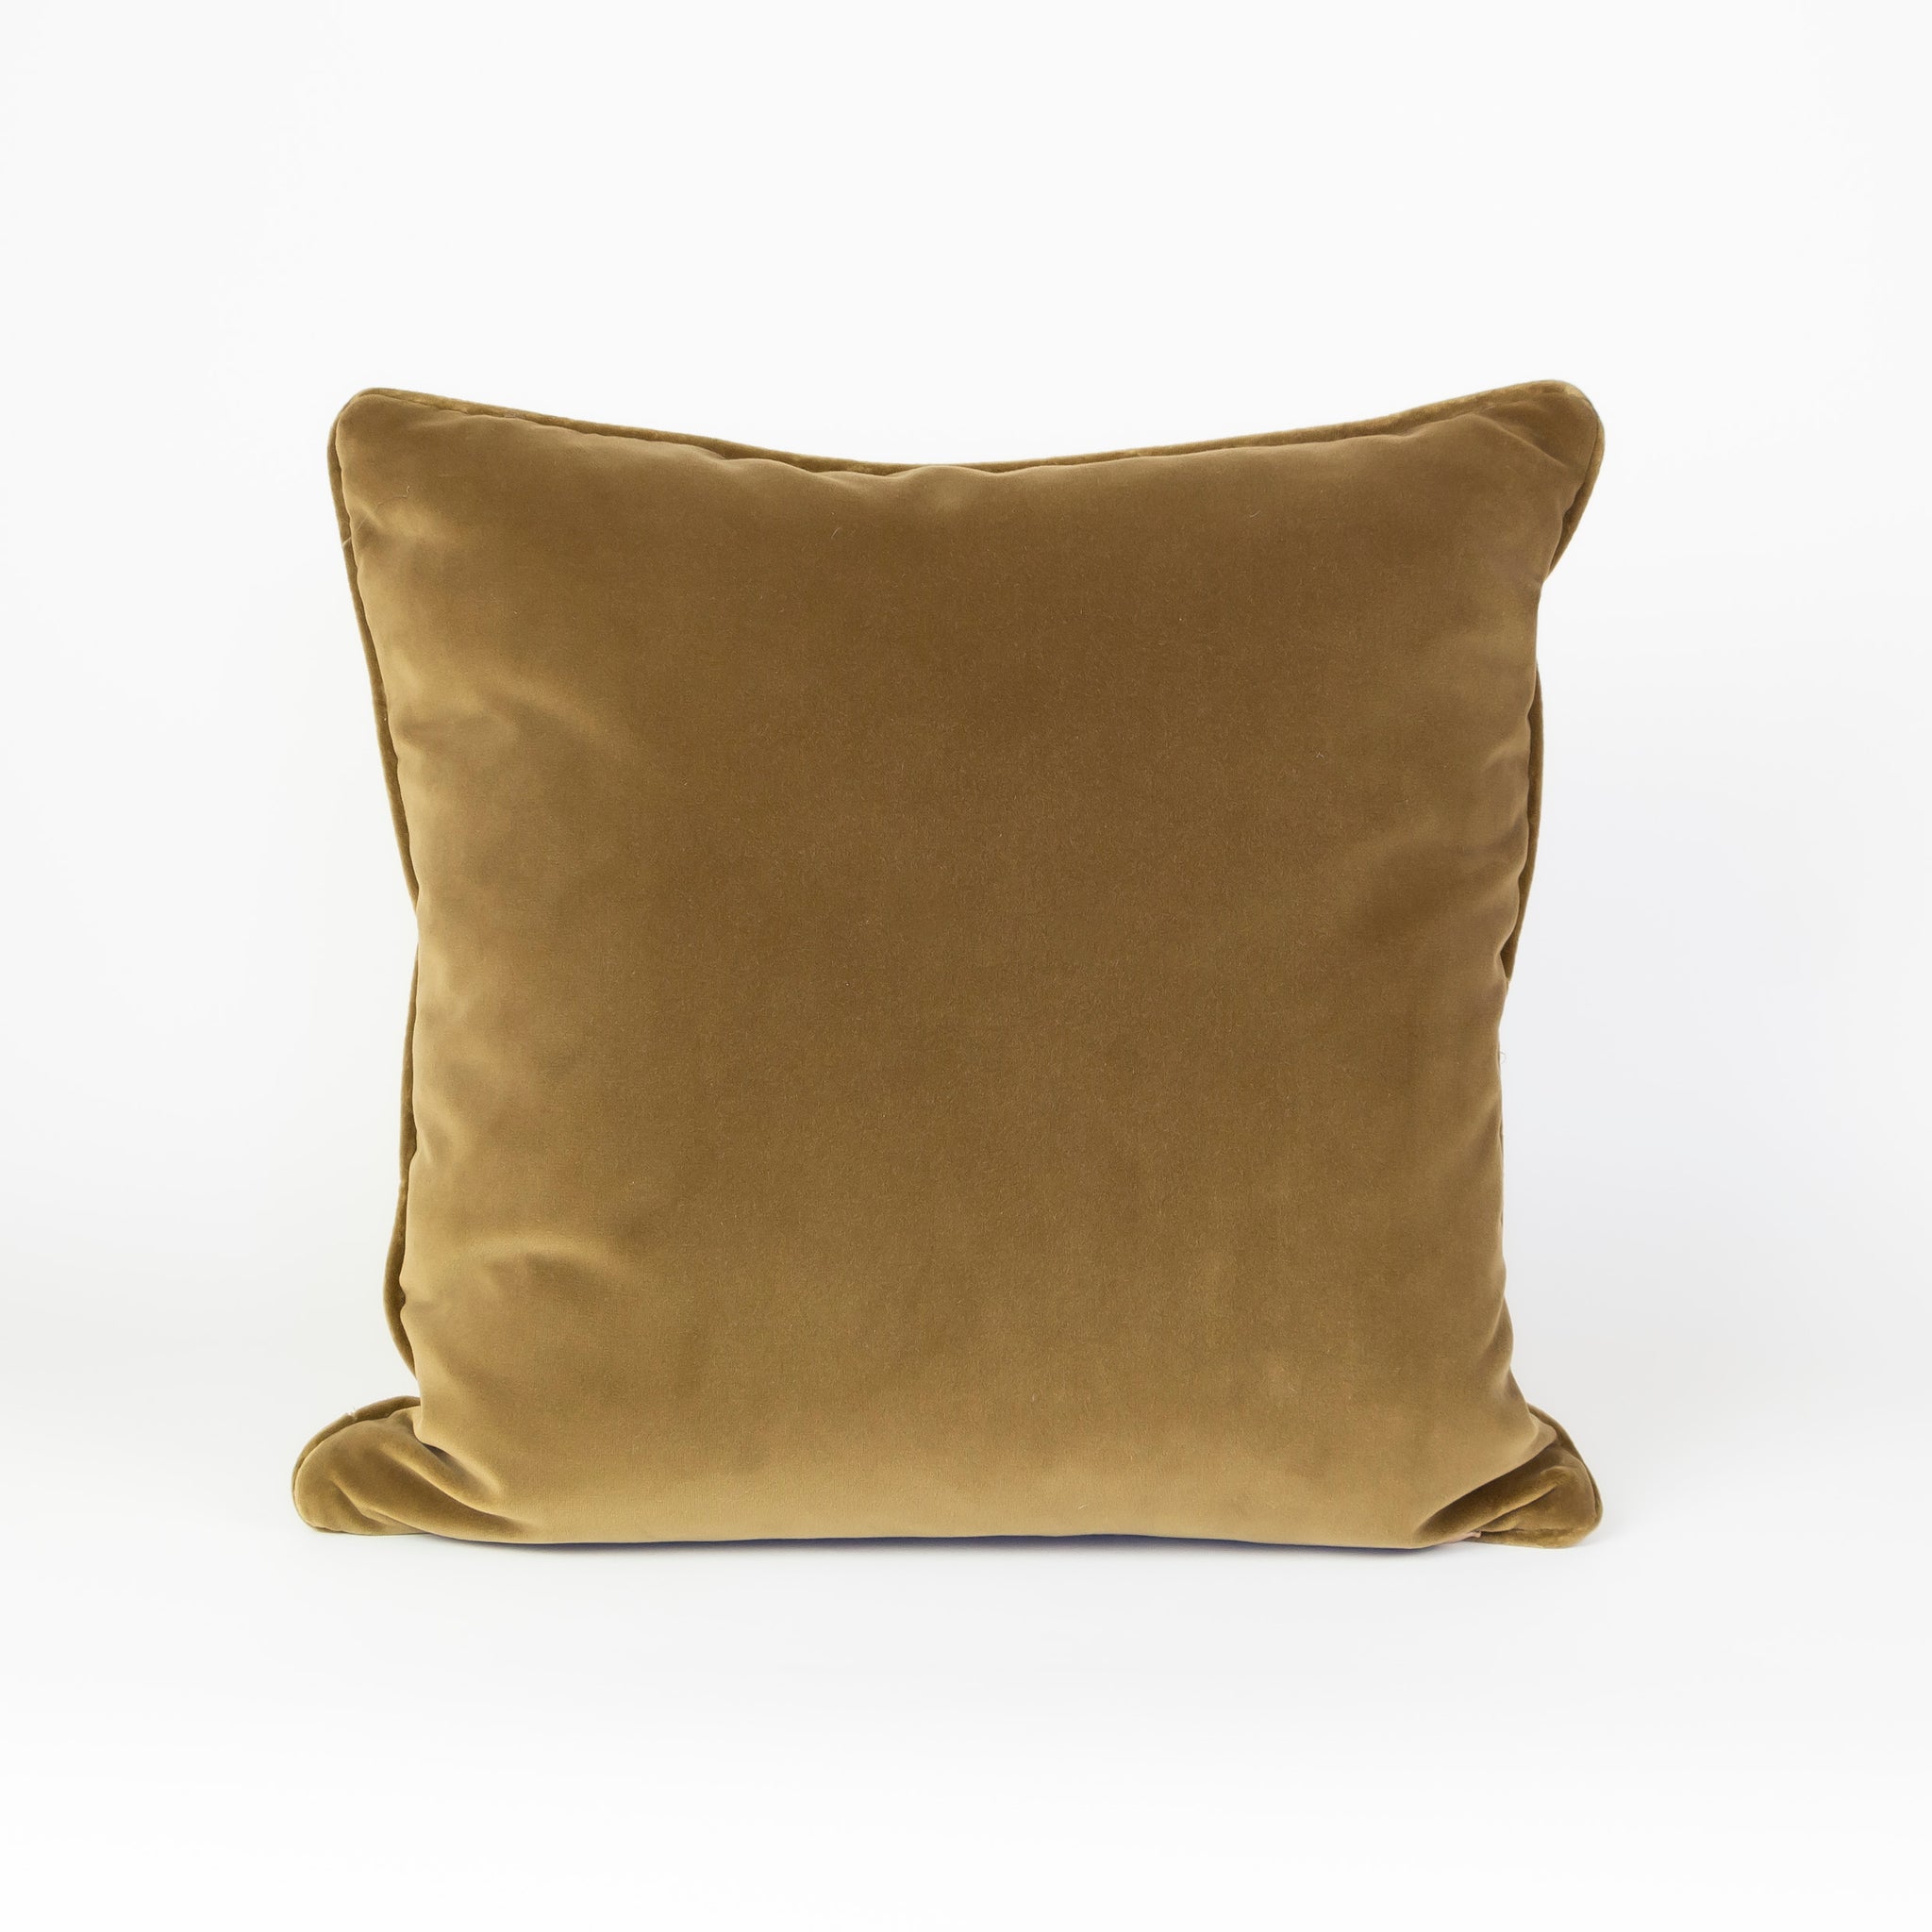 The Teddy Velvet Pillow